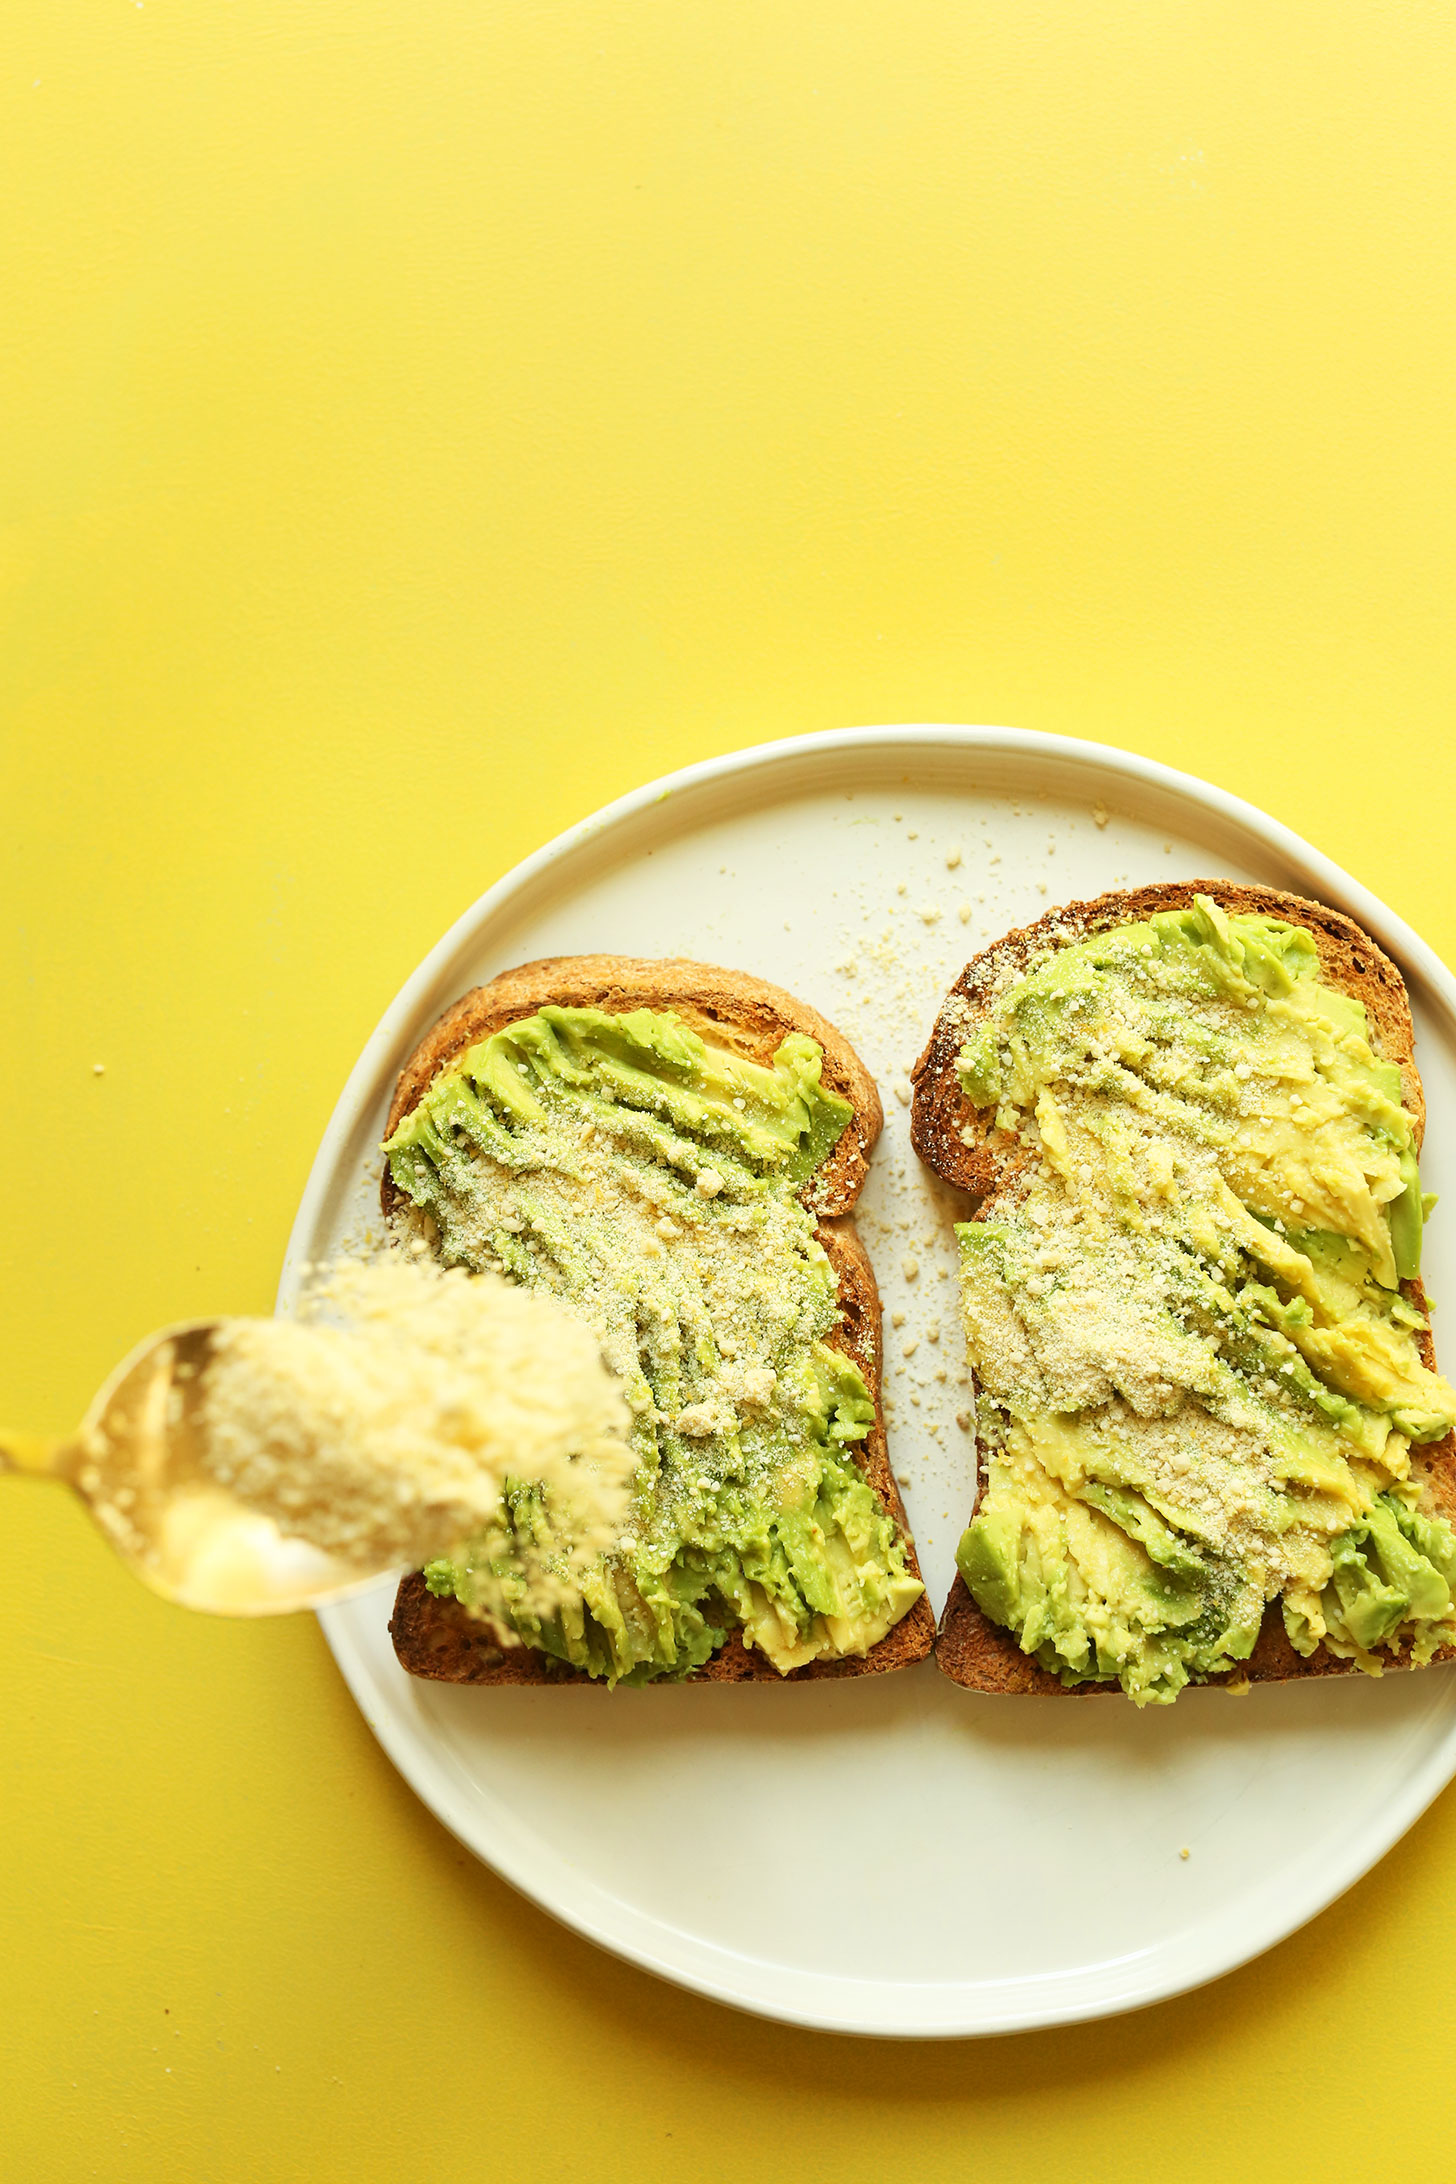 Sprinkling vegan parmesan onto avocado toast